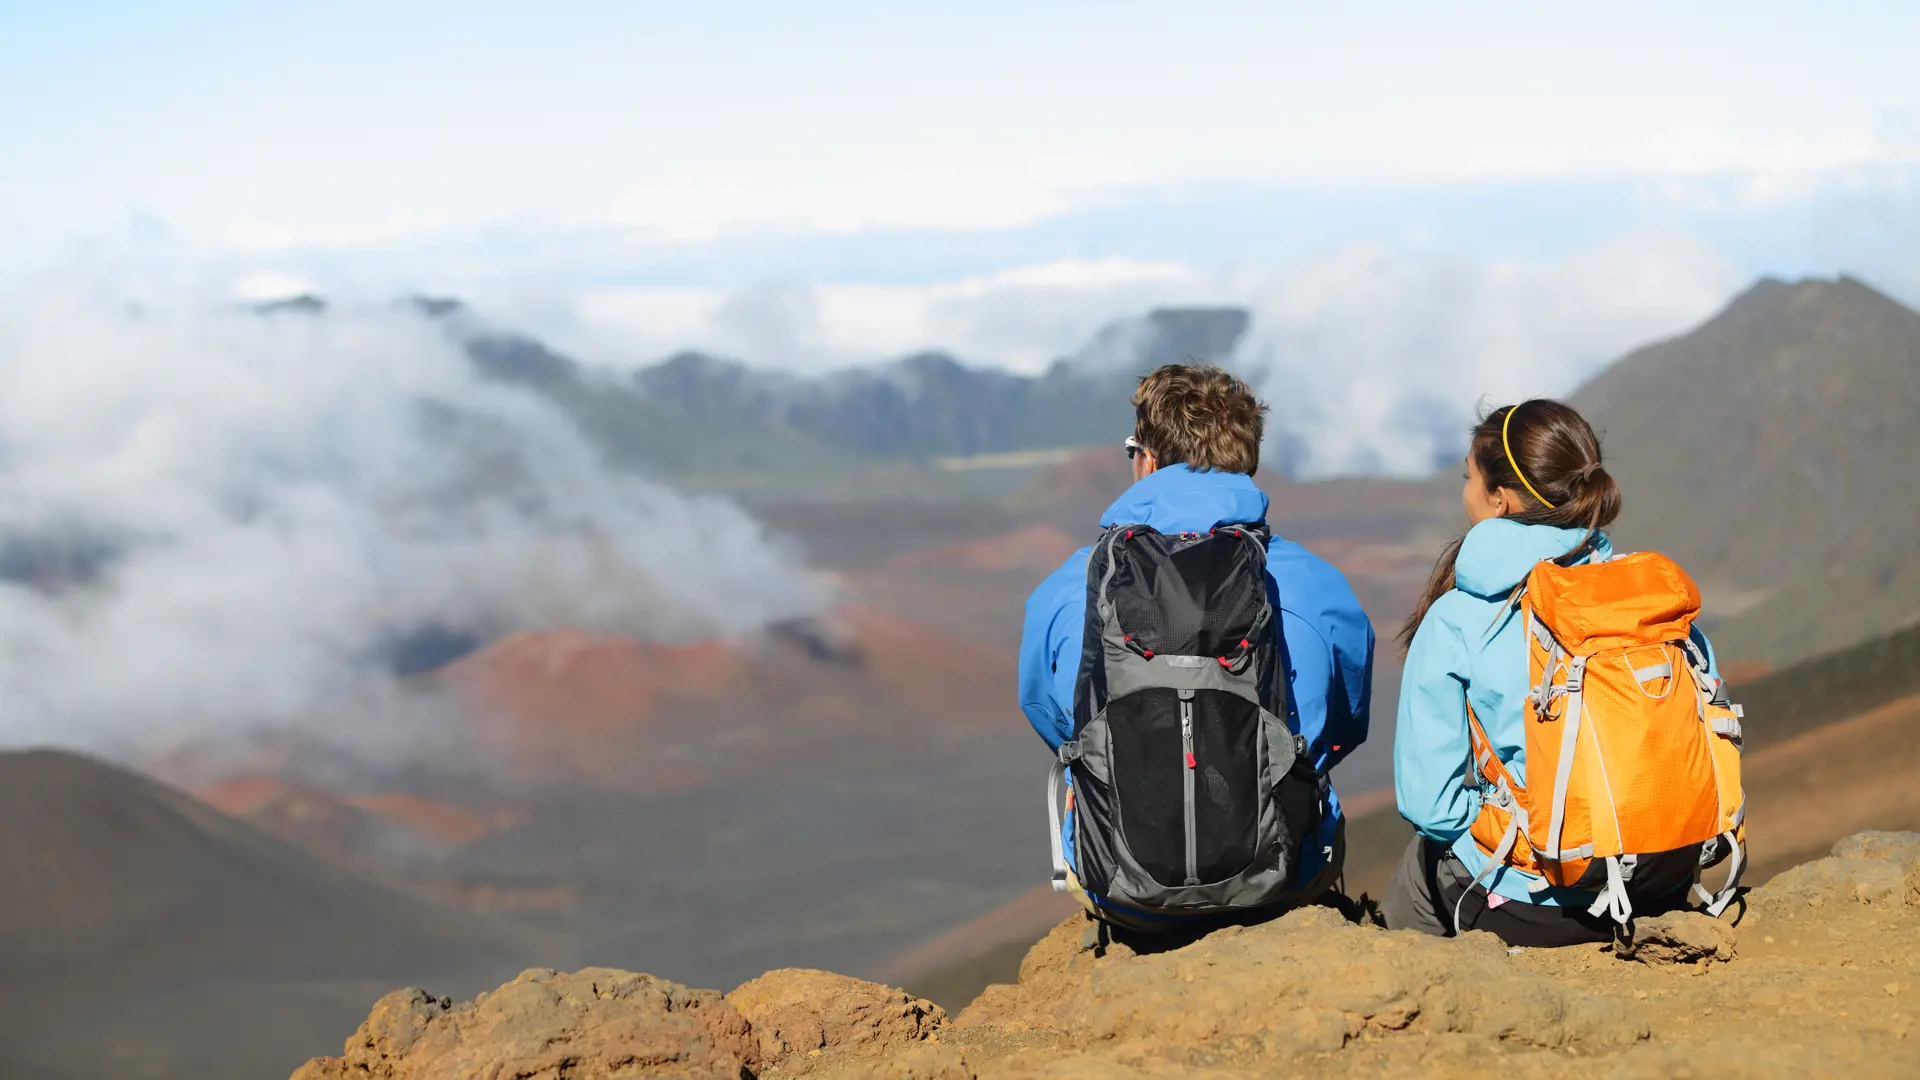 MAUI - Haleakala nationalparken giver mulighed for mange spektakulære vandreture i de golde vulkanlandskaber, Check Point Travel